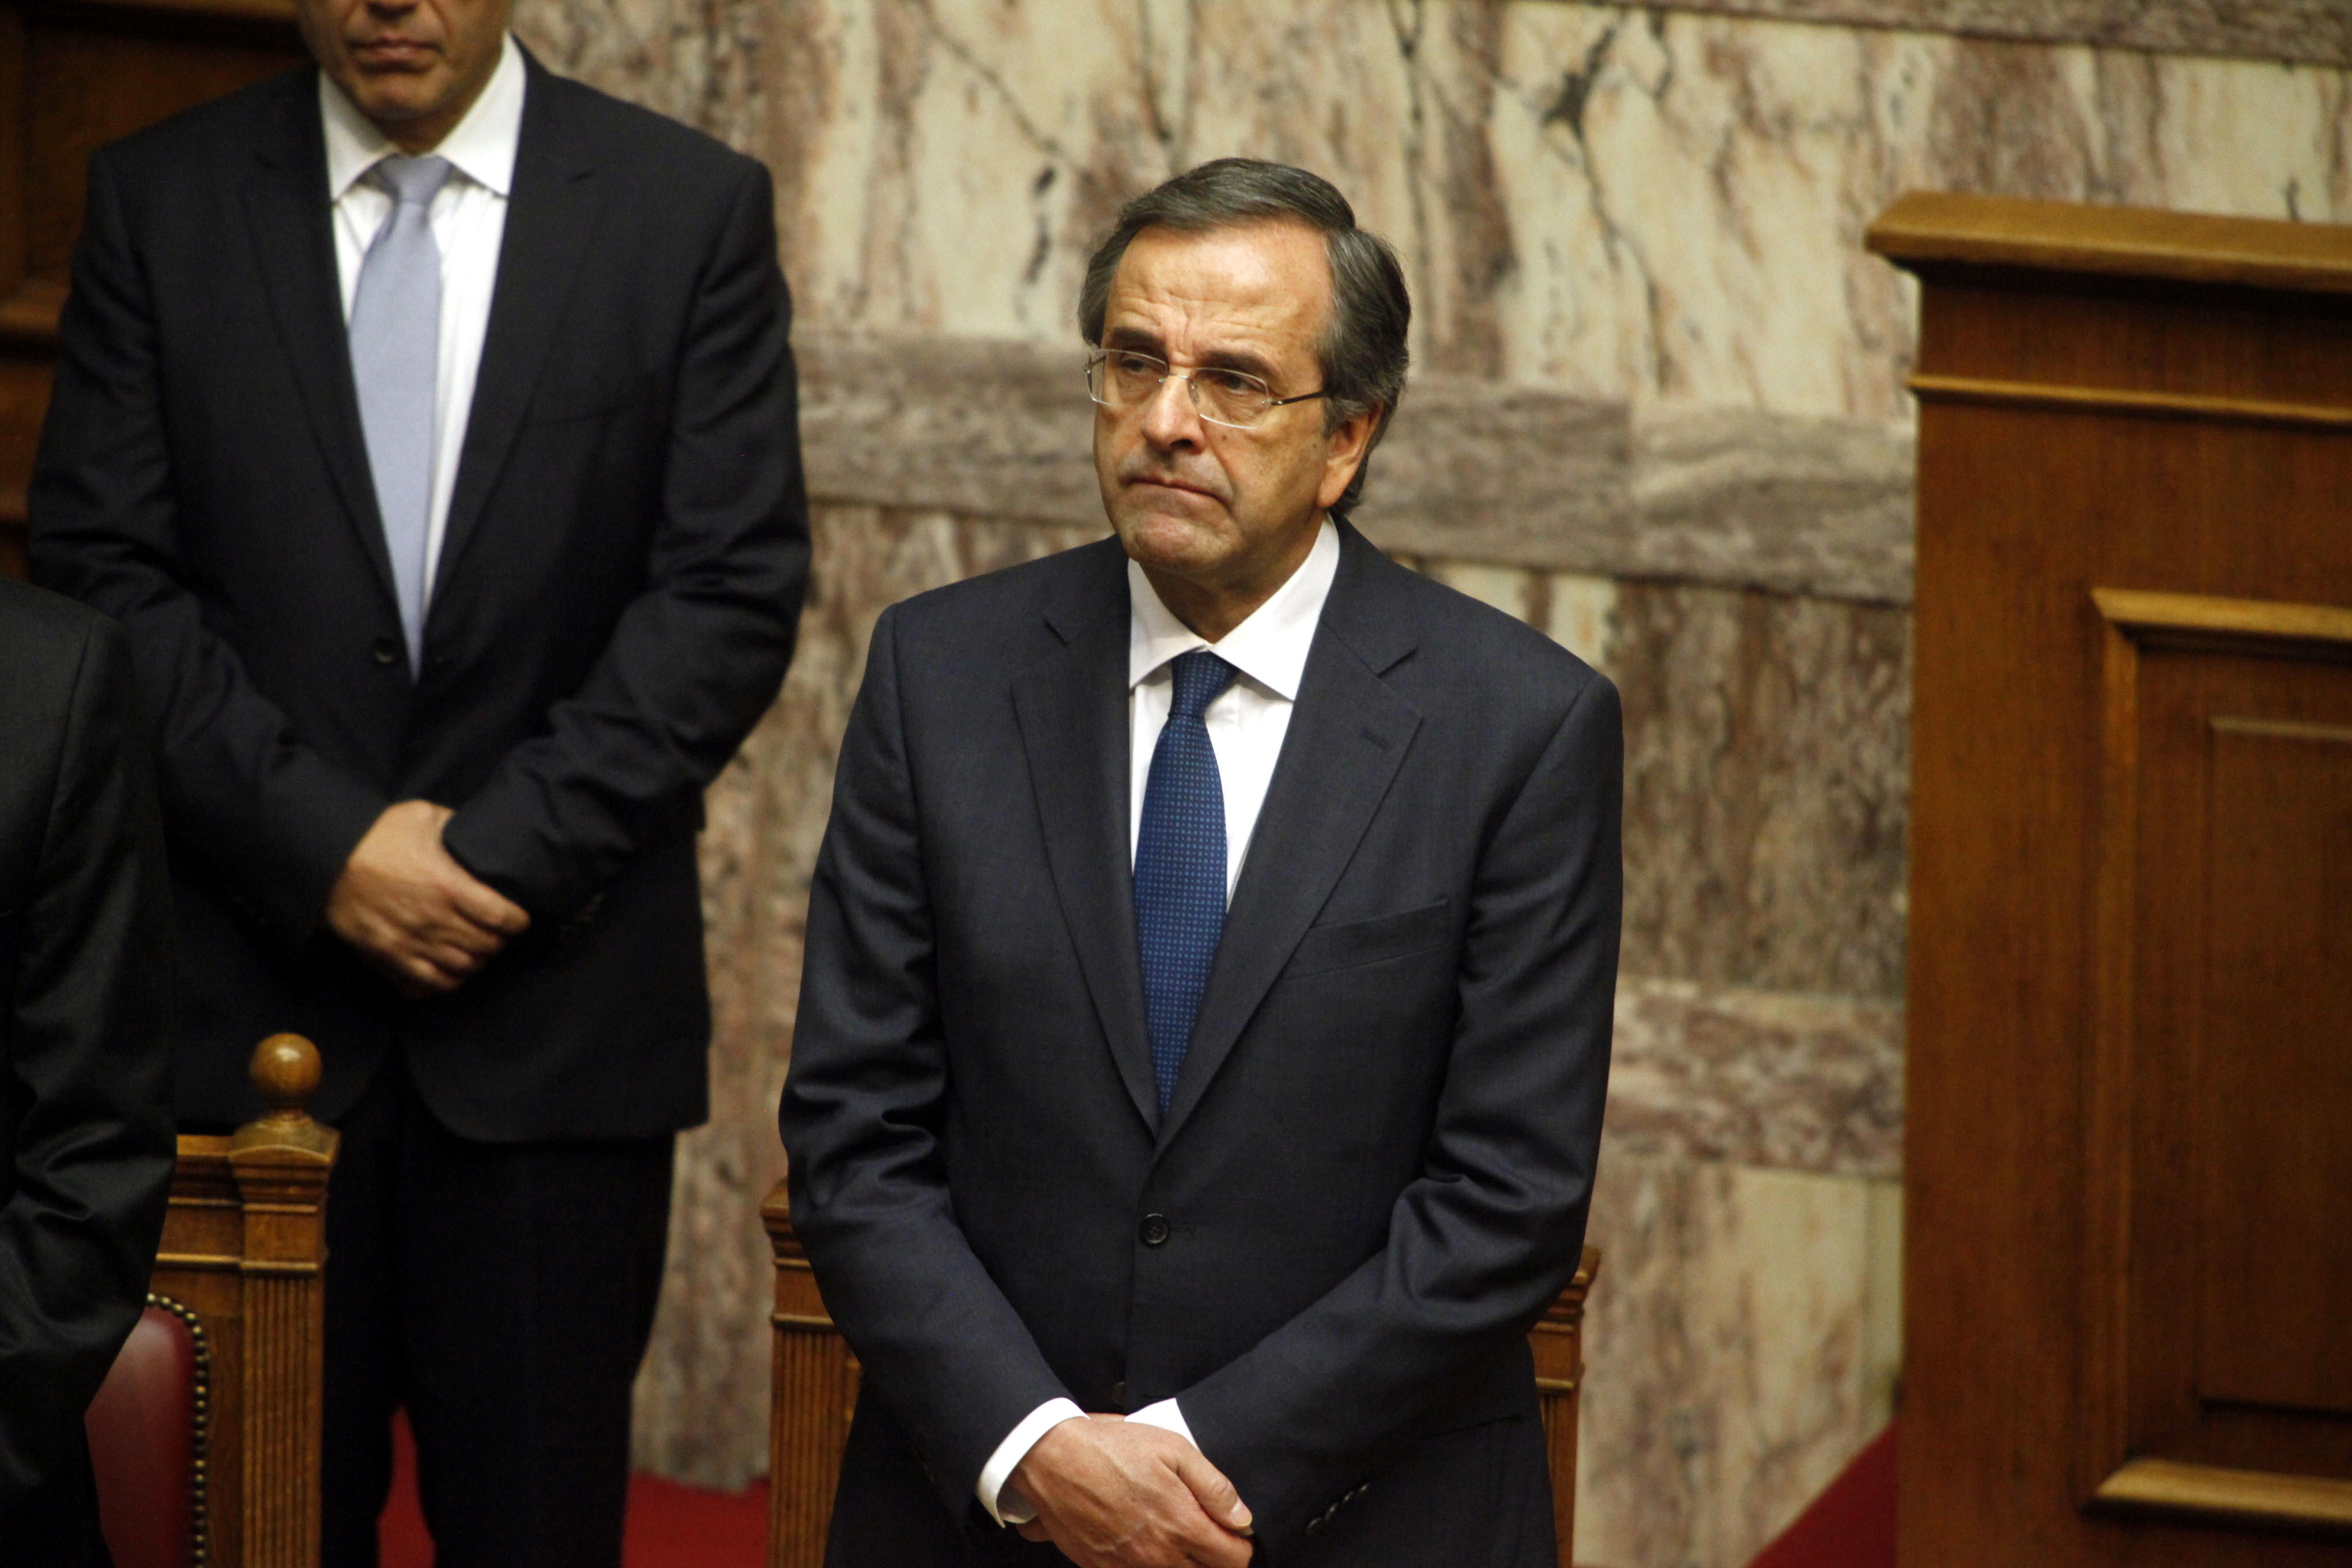 ΣΥΡΙΖΑ: Ο Σαμαράς είναι ο μοναδικός πρωθυπουργός που δεν έχει απαντήσει ούτε σε μια ερώτηση!